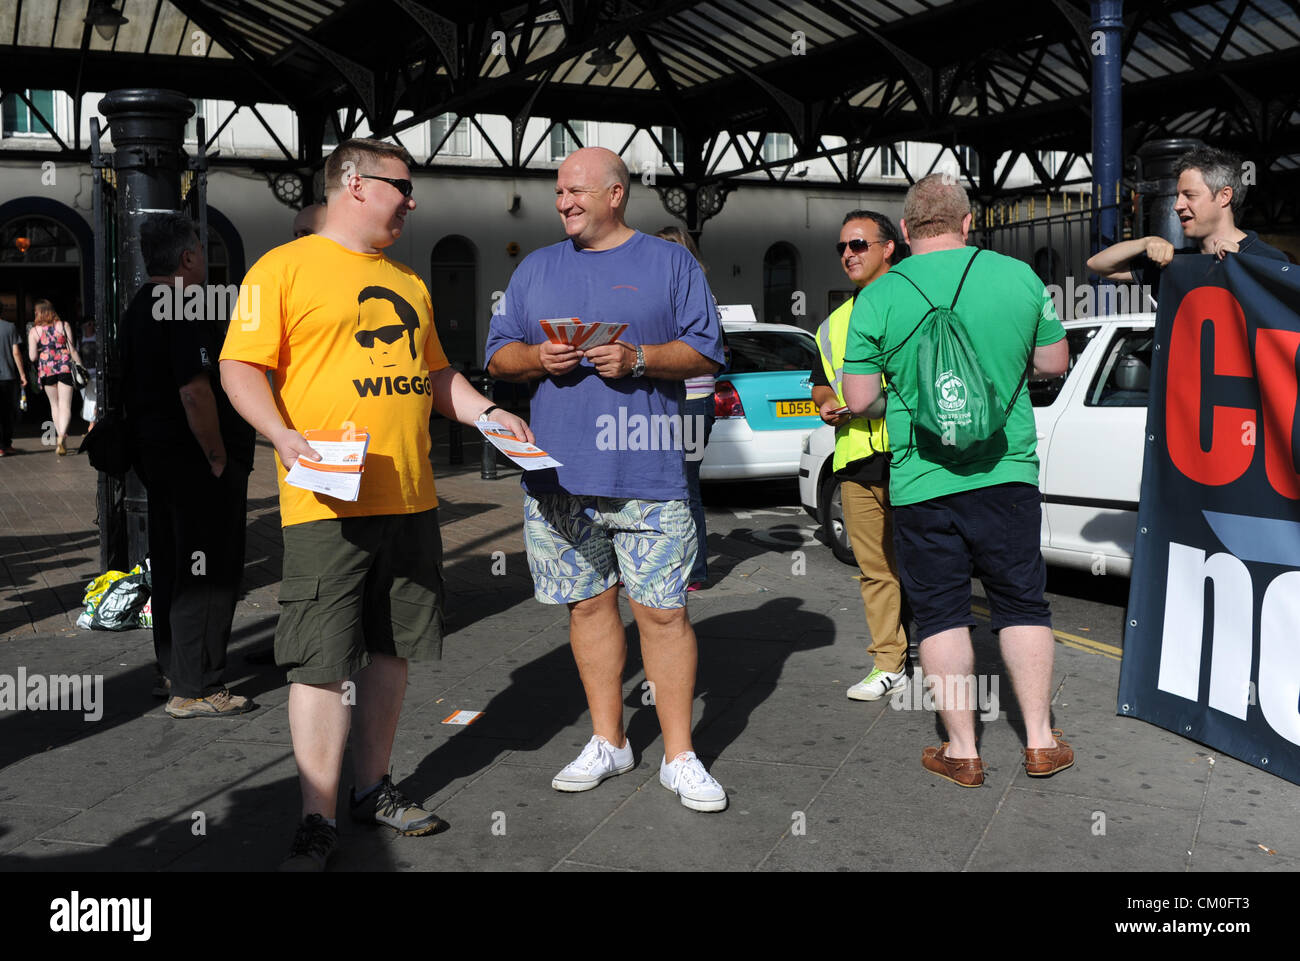 Brighton UK 8 Septembre 2012 - RMT dirigeant syndical Bob Crow (centre en chemise bleue) s'est joint à protester contre les travailleurs des chemins de fer Banque D'Images